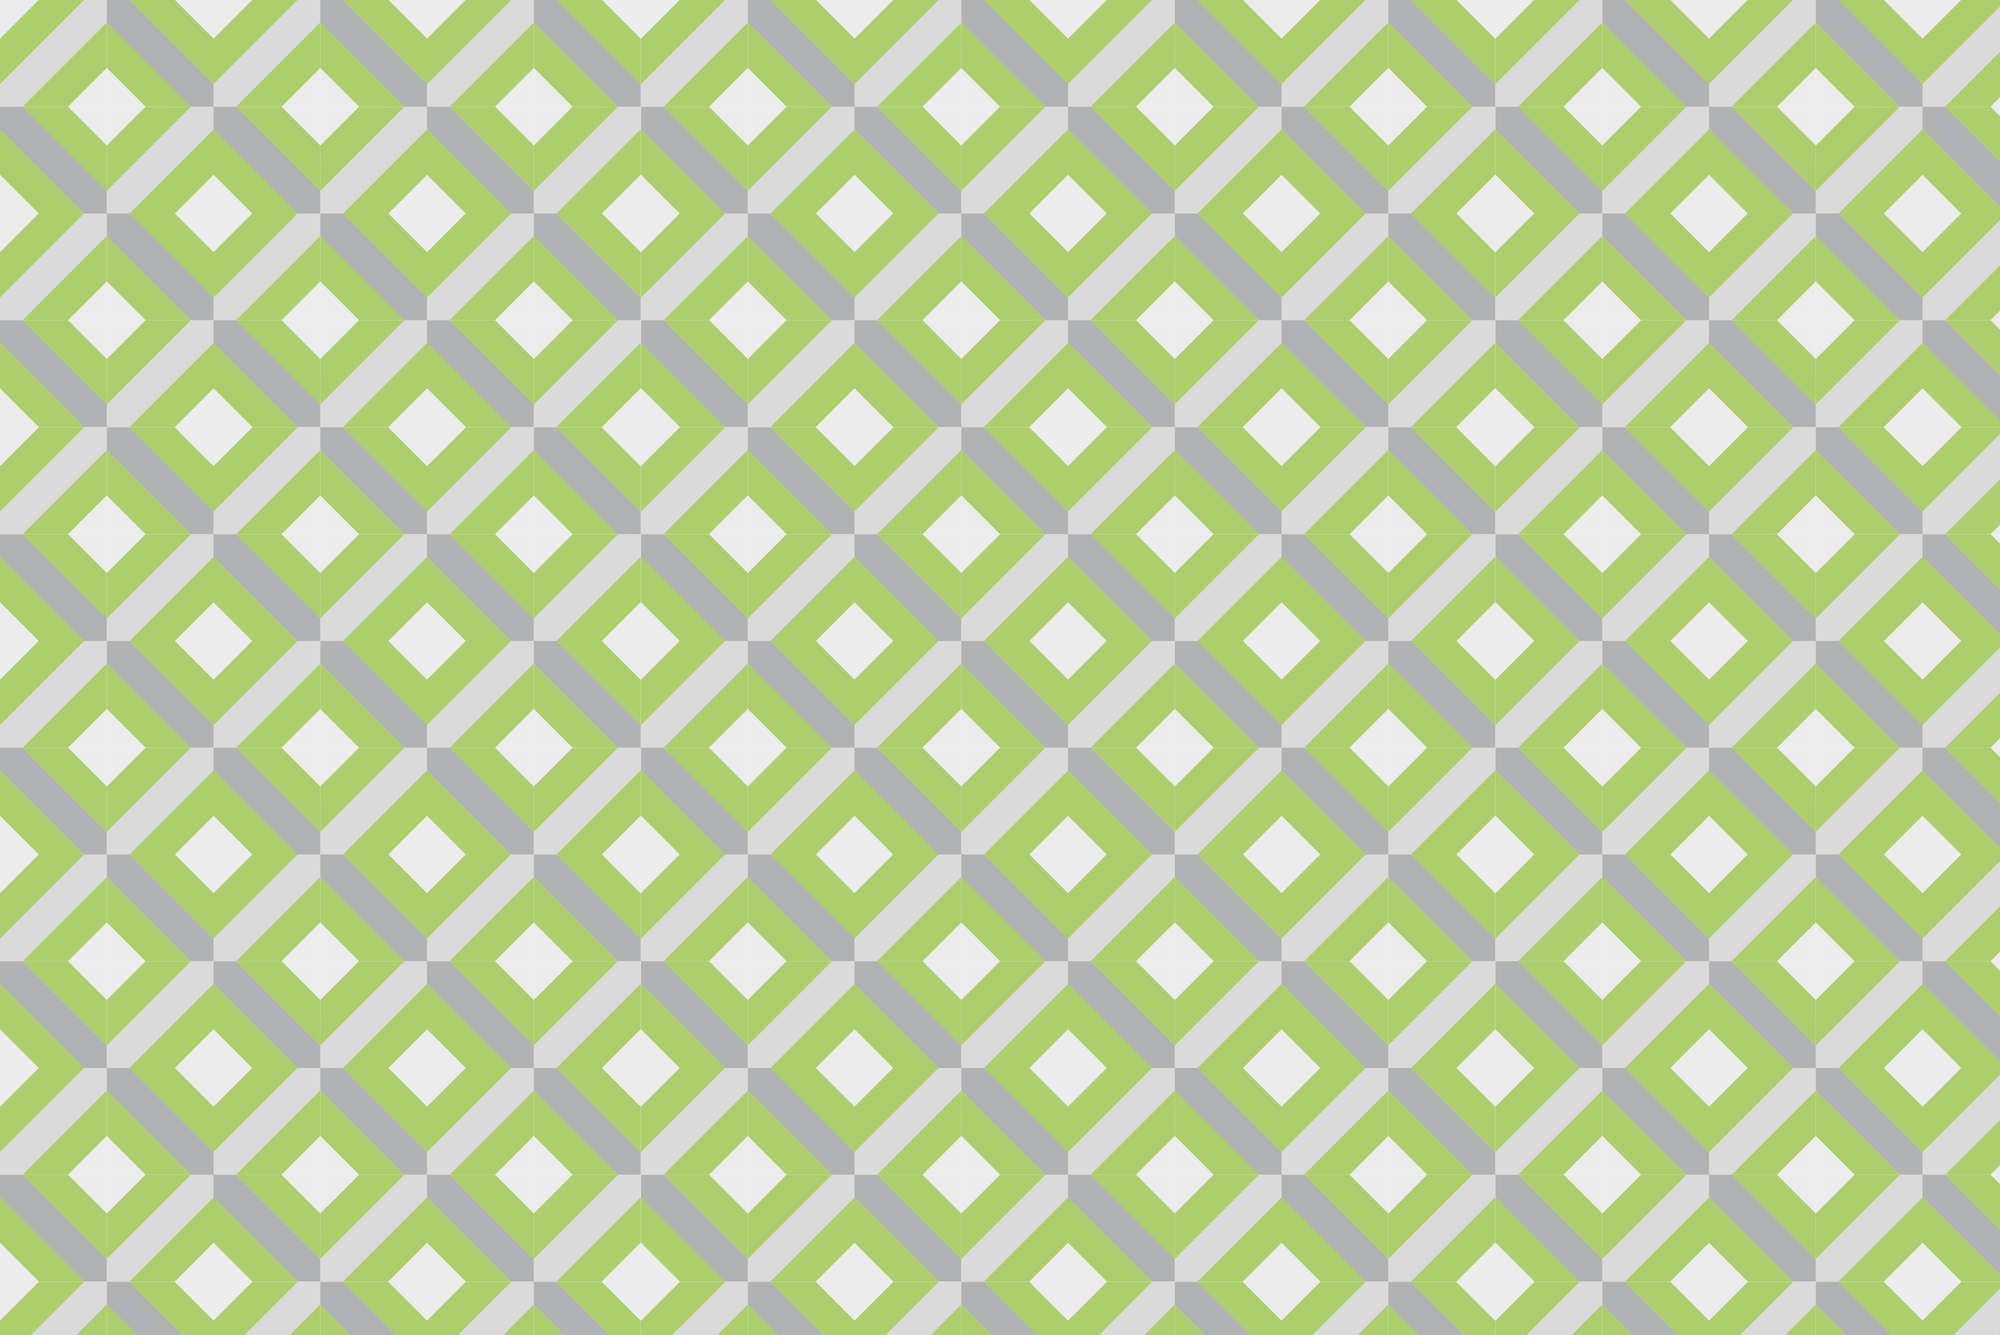             Motivo scatola di carta da parati con piccoli quadrati verdi su vello liscio di prima qualità
        